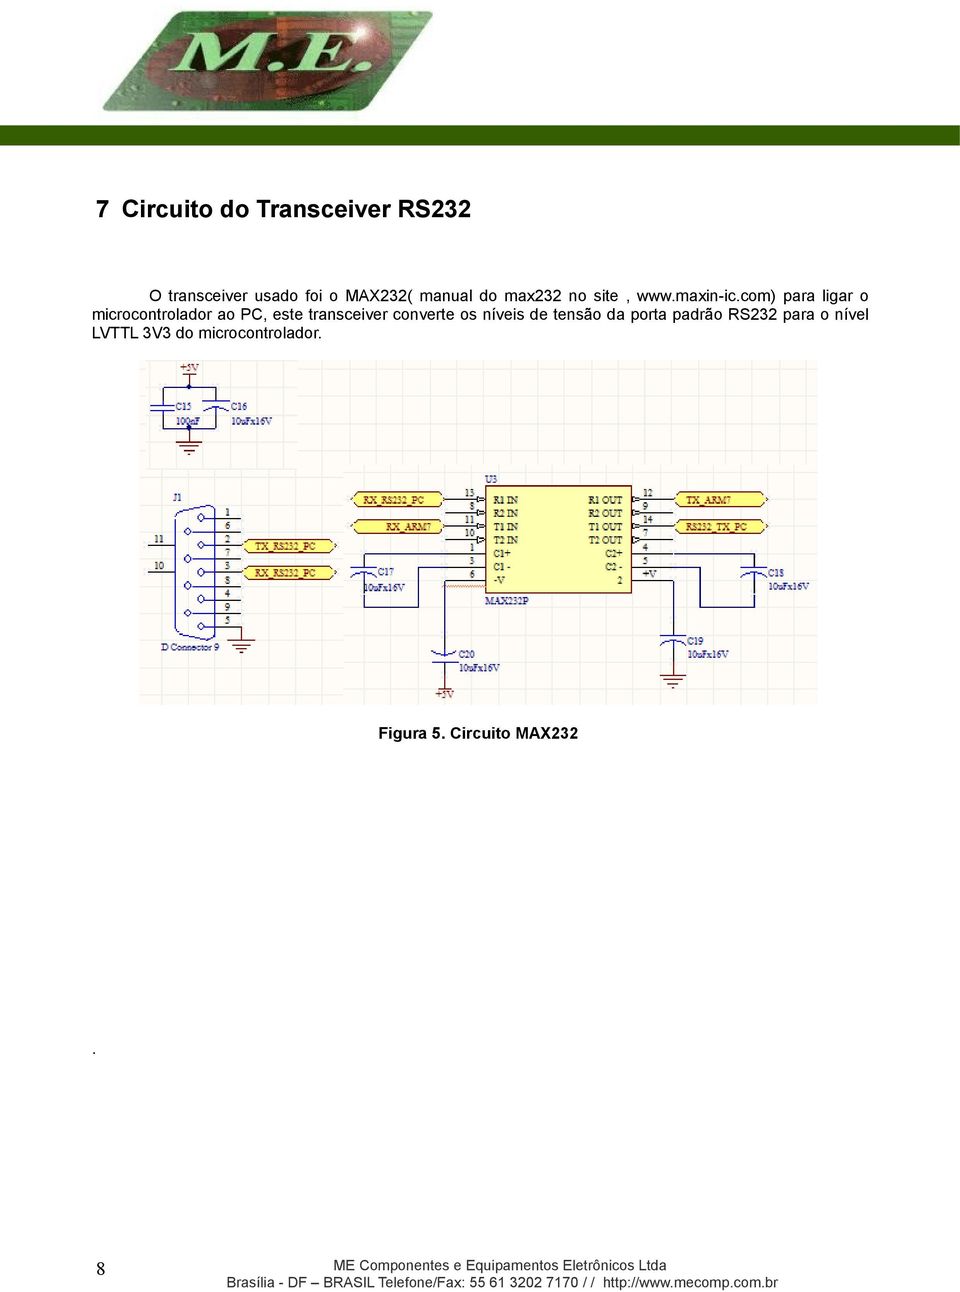 com) para ligar o microcontrolador ao PC, este transceiver converte os níveis de